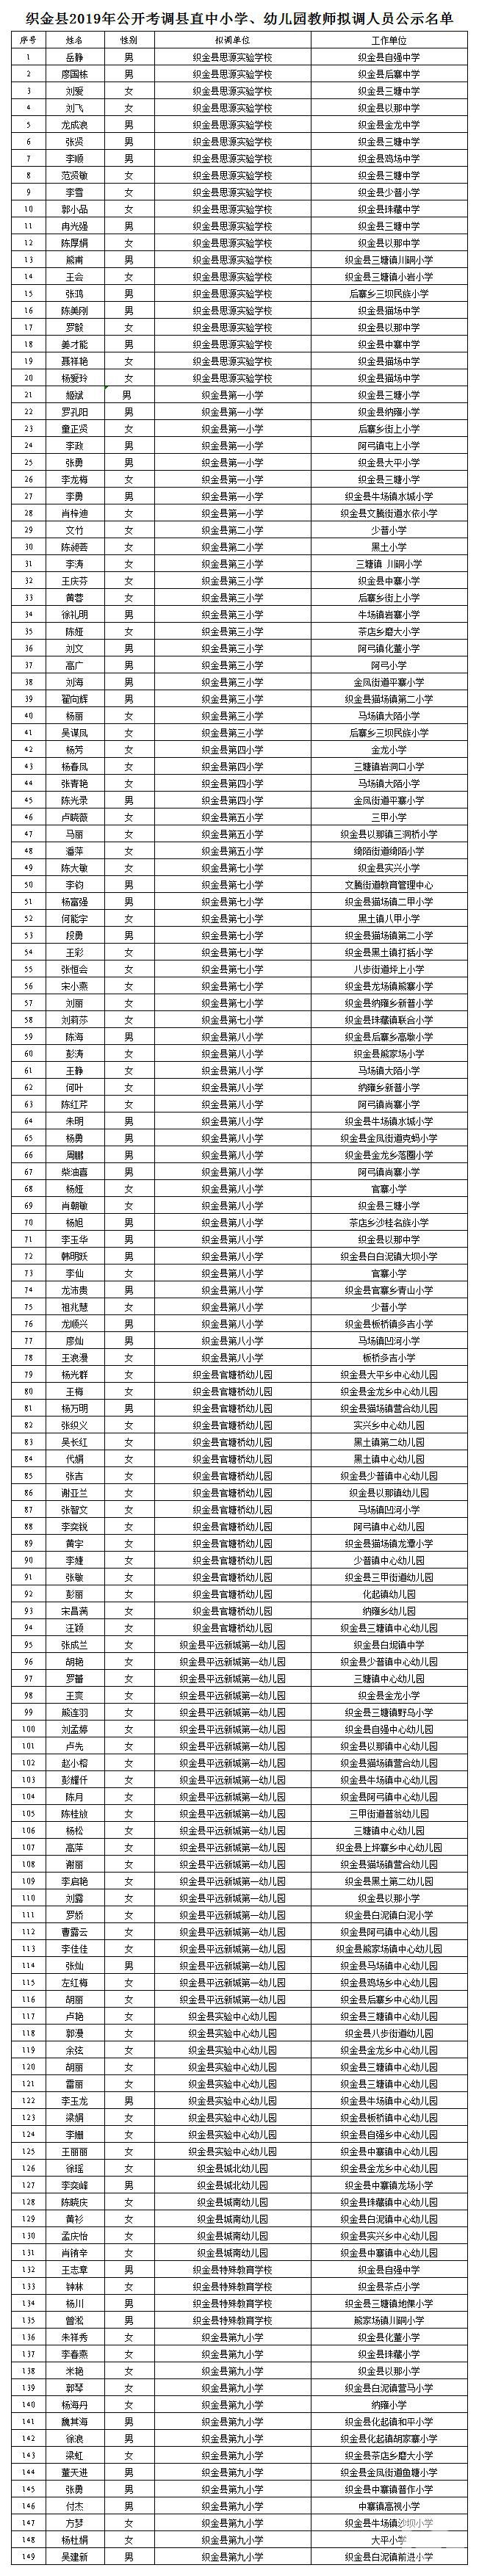 织金县2019年公开考调县直中小学、幼儿园教师拟调人员公示名单.jpg